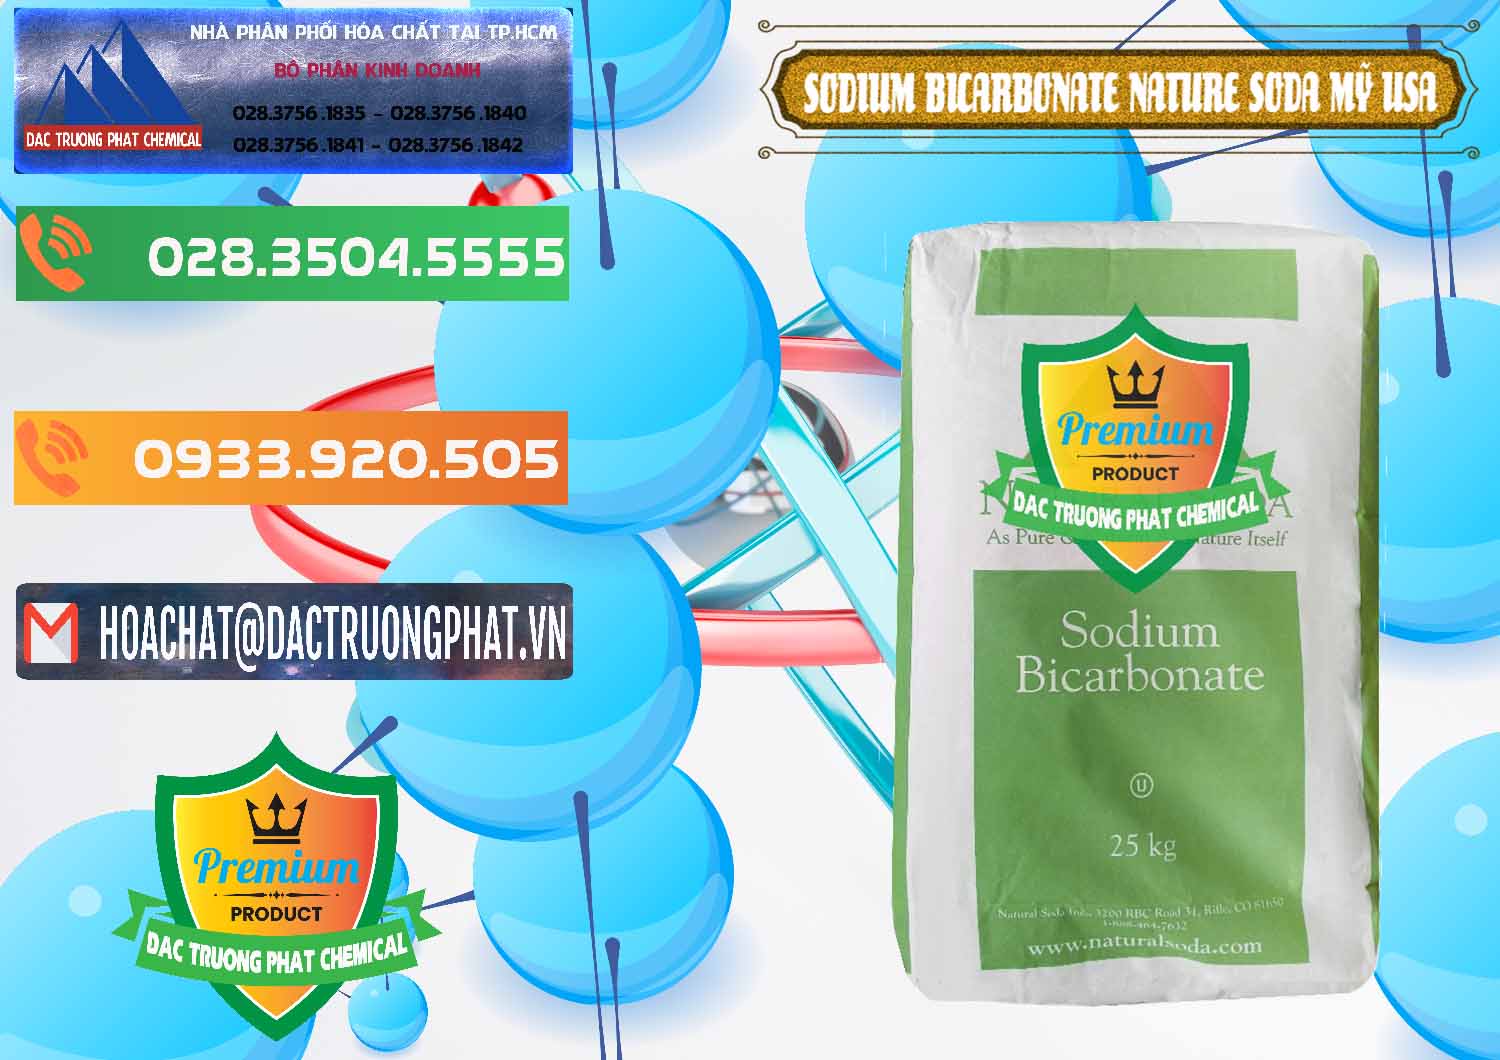 Đơn vị chuyên phân phối & bán Sodium Bicarbonate – Bicar NaHCO3 Food Grade Nature Soda Mỹ USA - 0256 - Nơi cung cấp _ nhập khẩu hóa chất tại TP.HCM - hoachatxulynuoc.com.vn